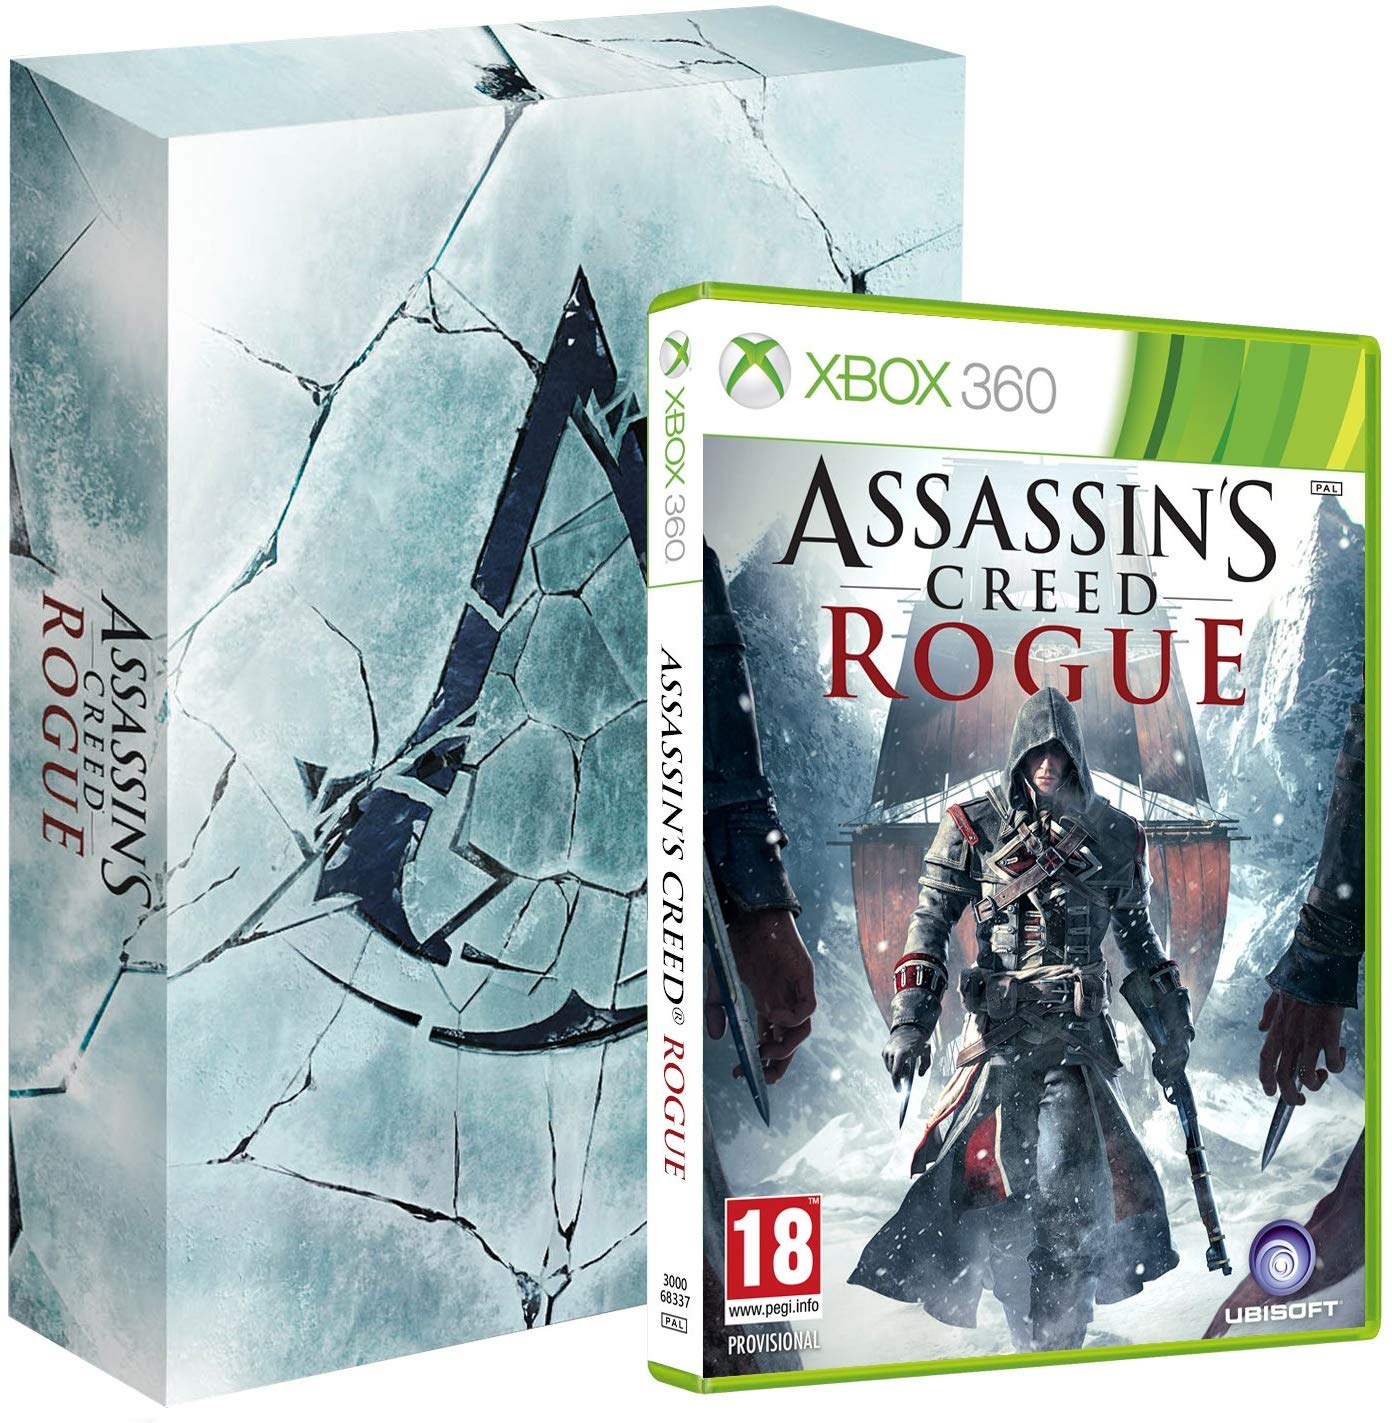 Assassins Creed Rogue Collectors Edition (soundtrack nélkül) - Xbox 360 Játékok